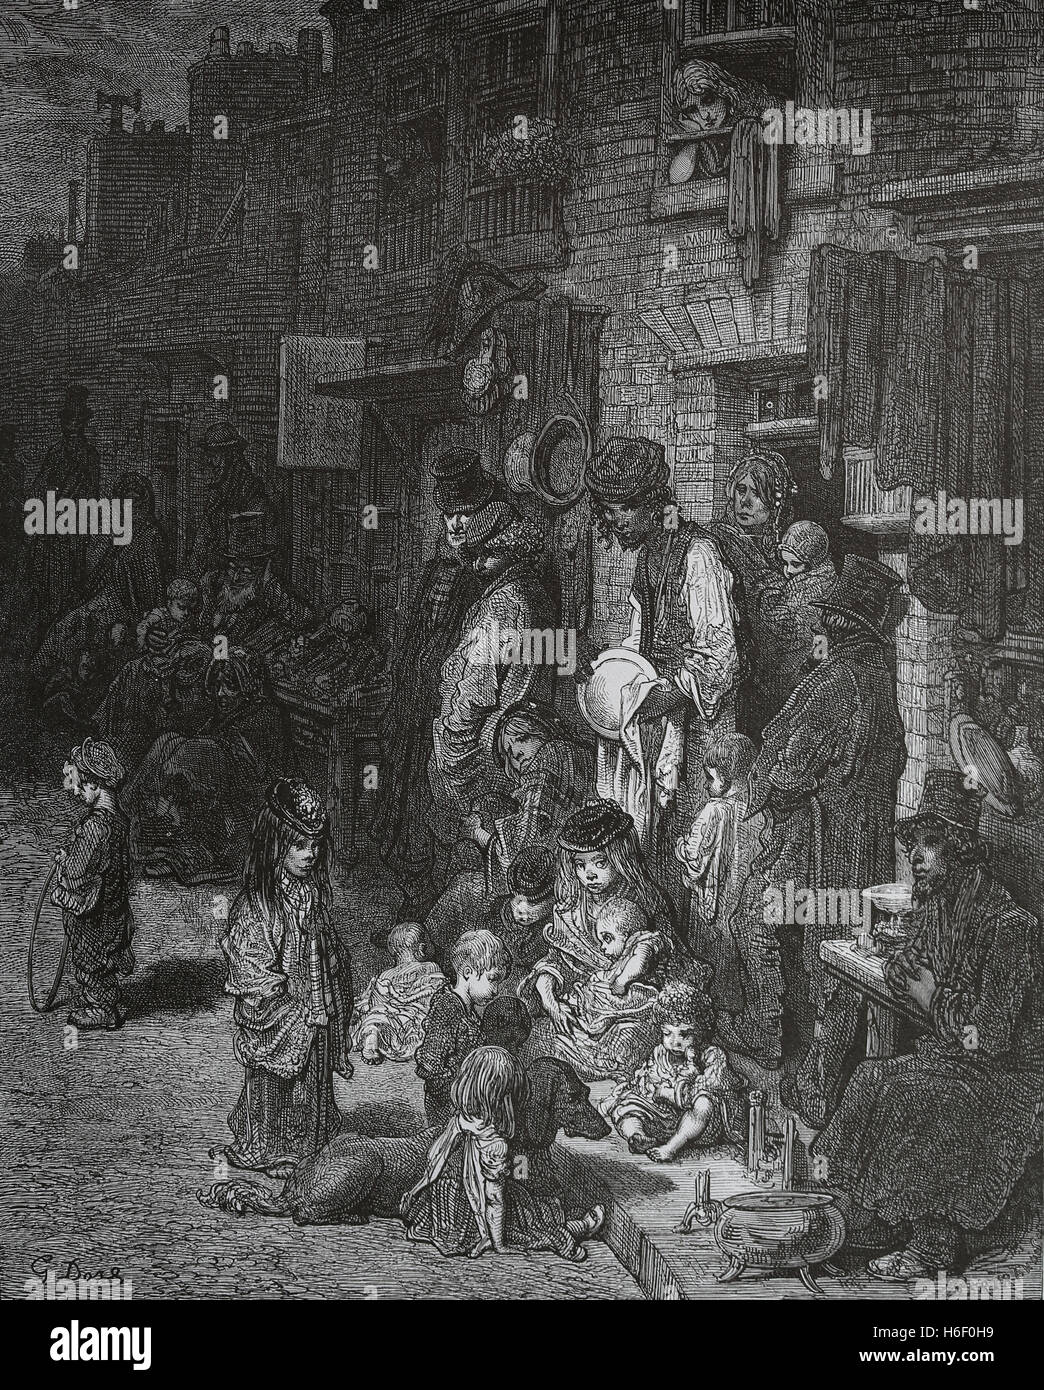 United Kingdom. Londres. Whitechapel. Quartier de la classe ouvrière. Gravure de Gustave Dore, Londres ; un pèlerinage. 19e c. Banque D'Images